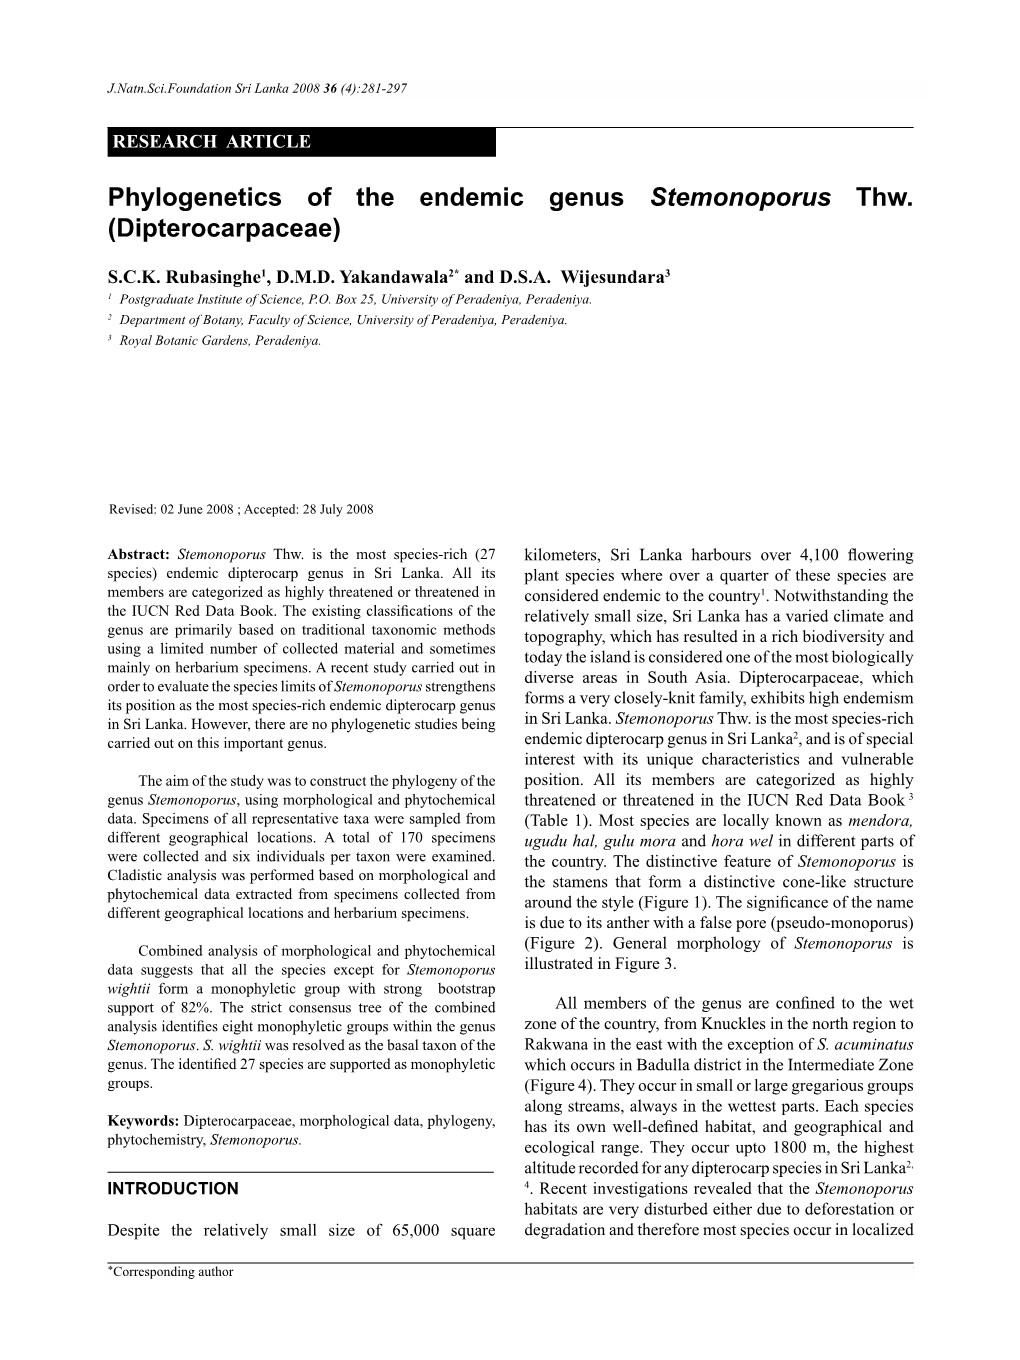 Phylogenetics of the Endemic Genus Stemonoporus Thw. (Dipterocarpaceae)